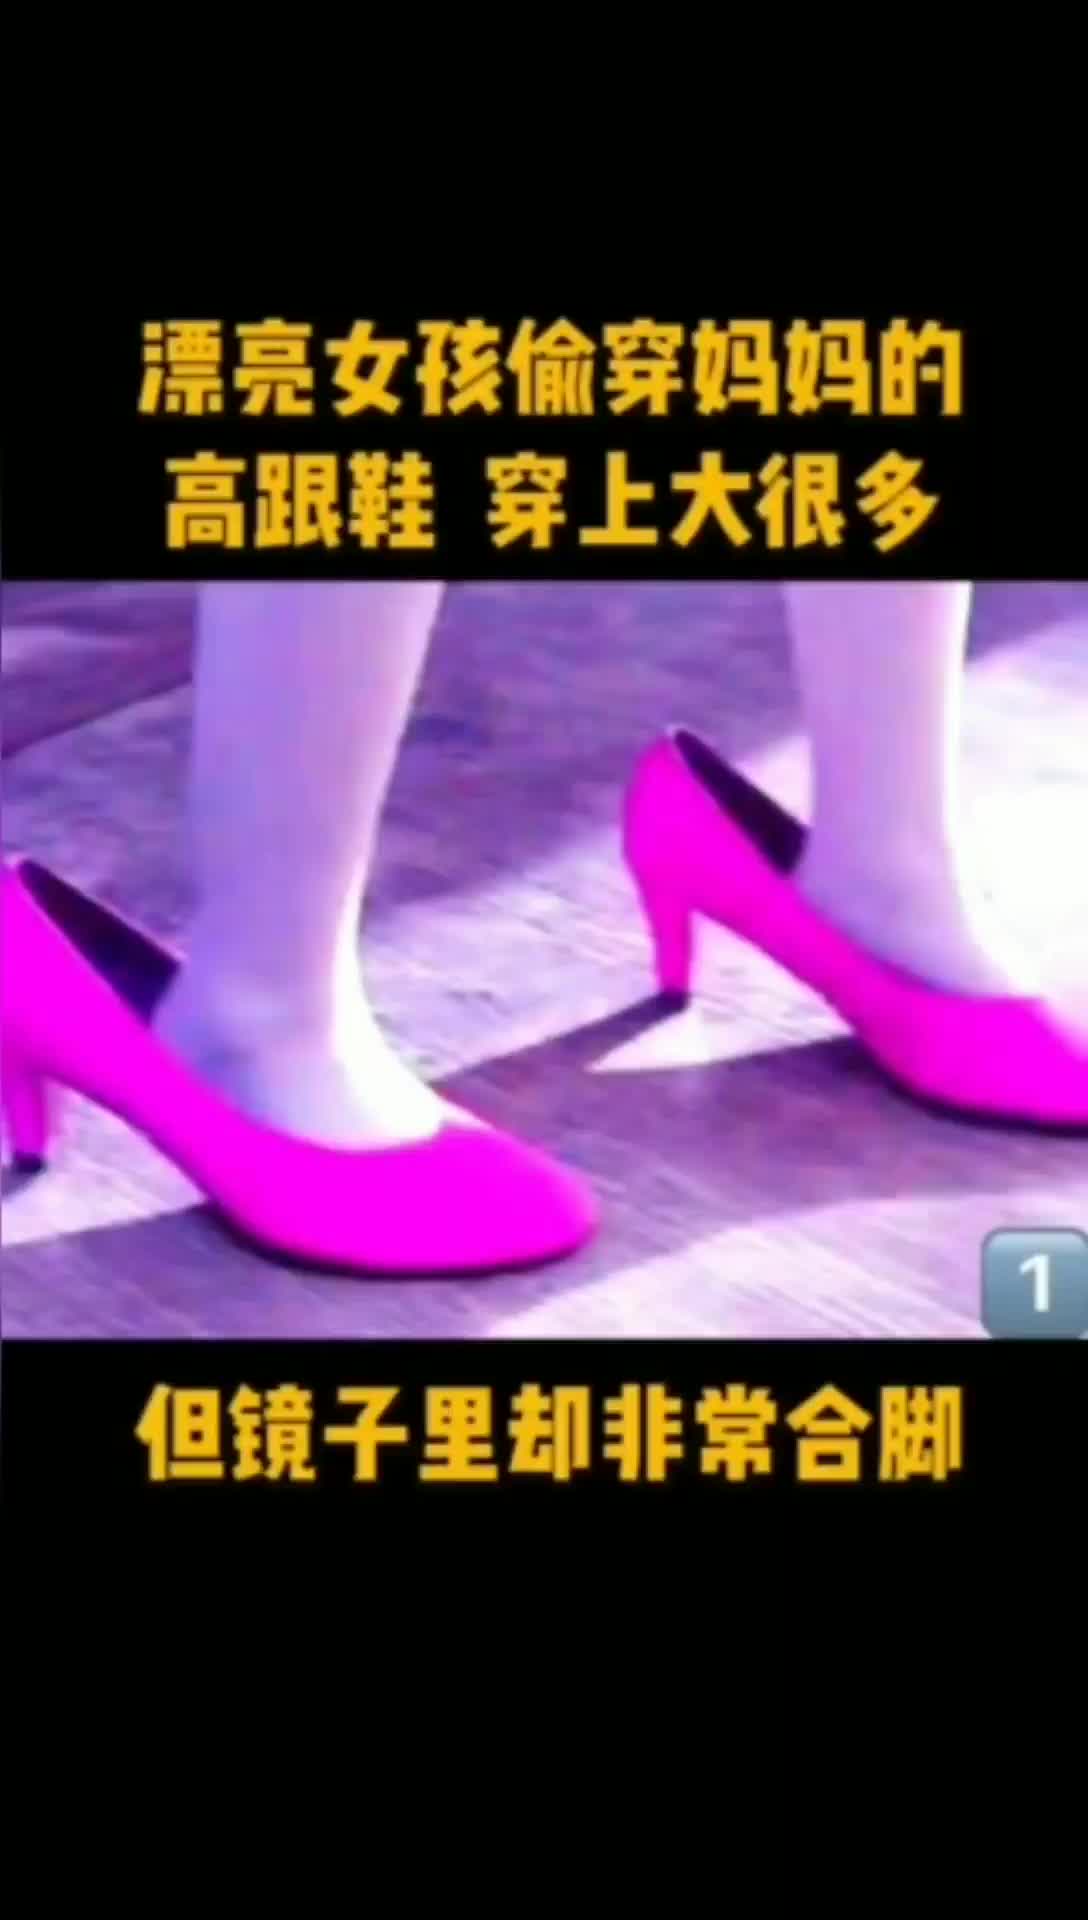 说电影《粉红色高跟鞋》